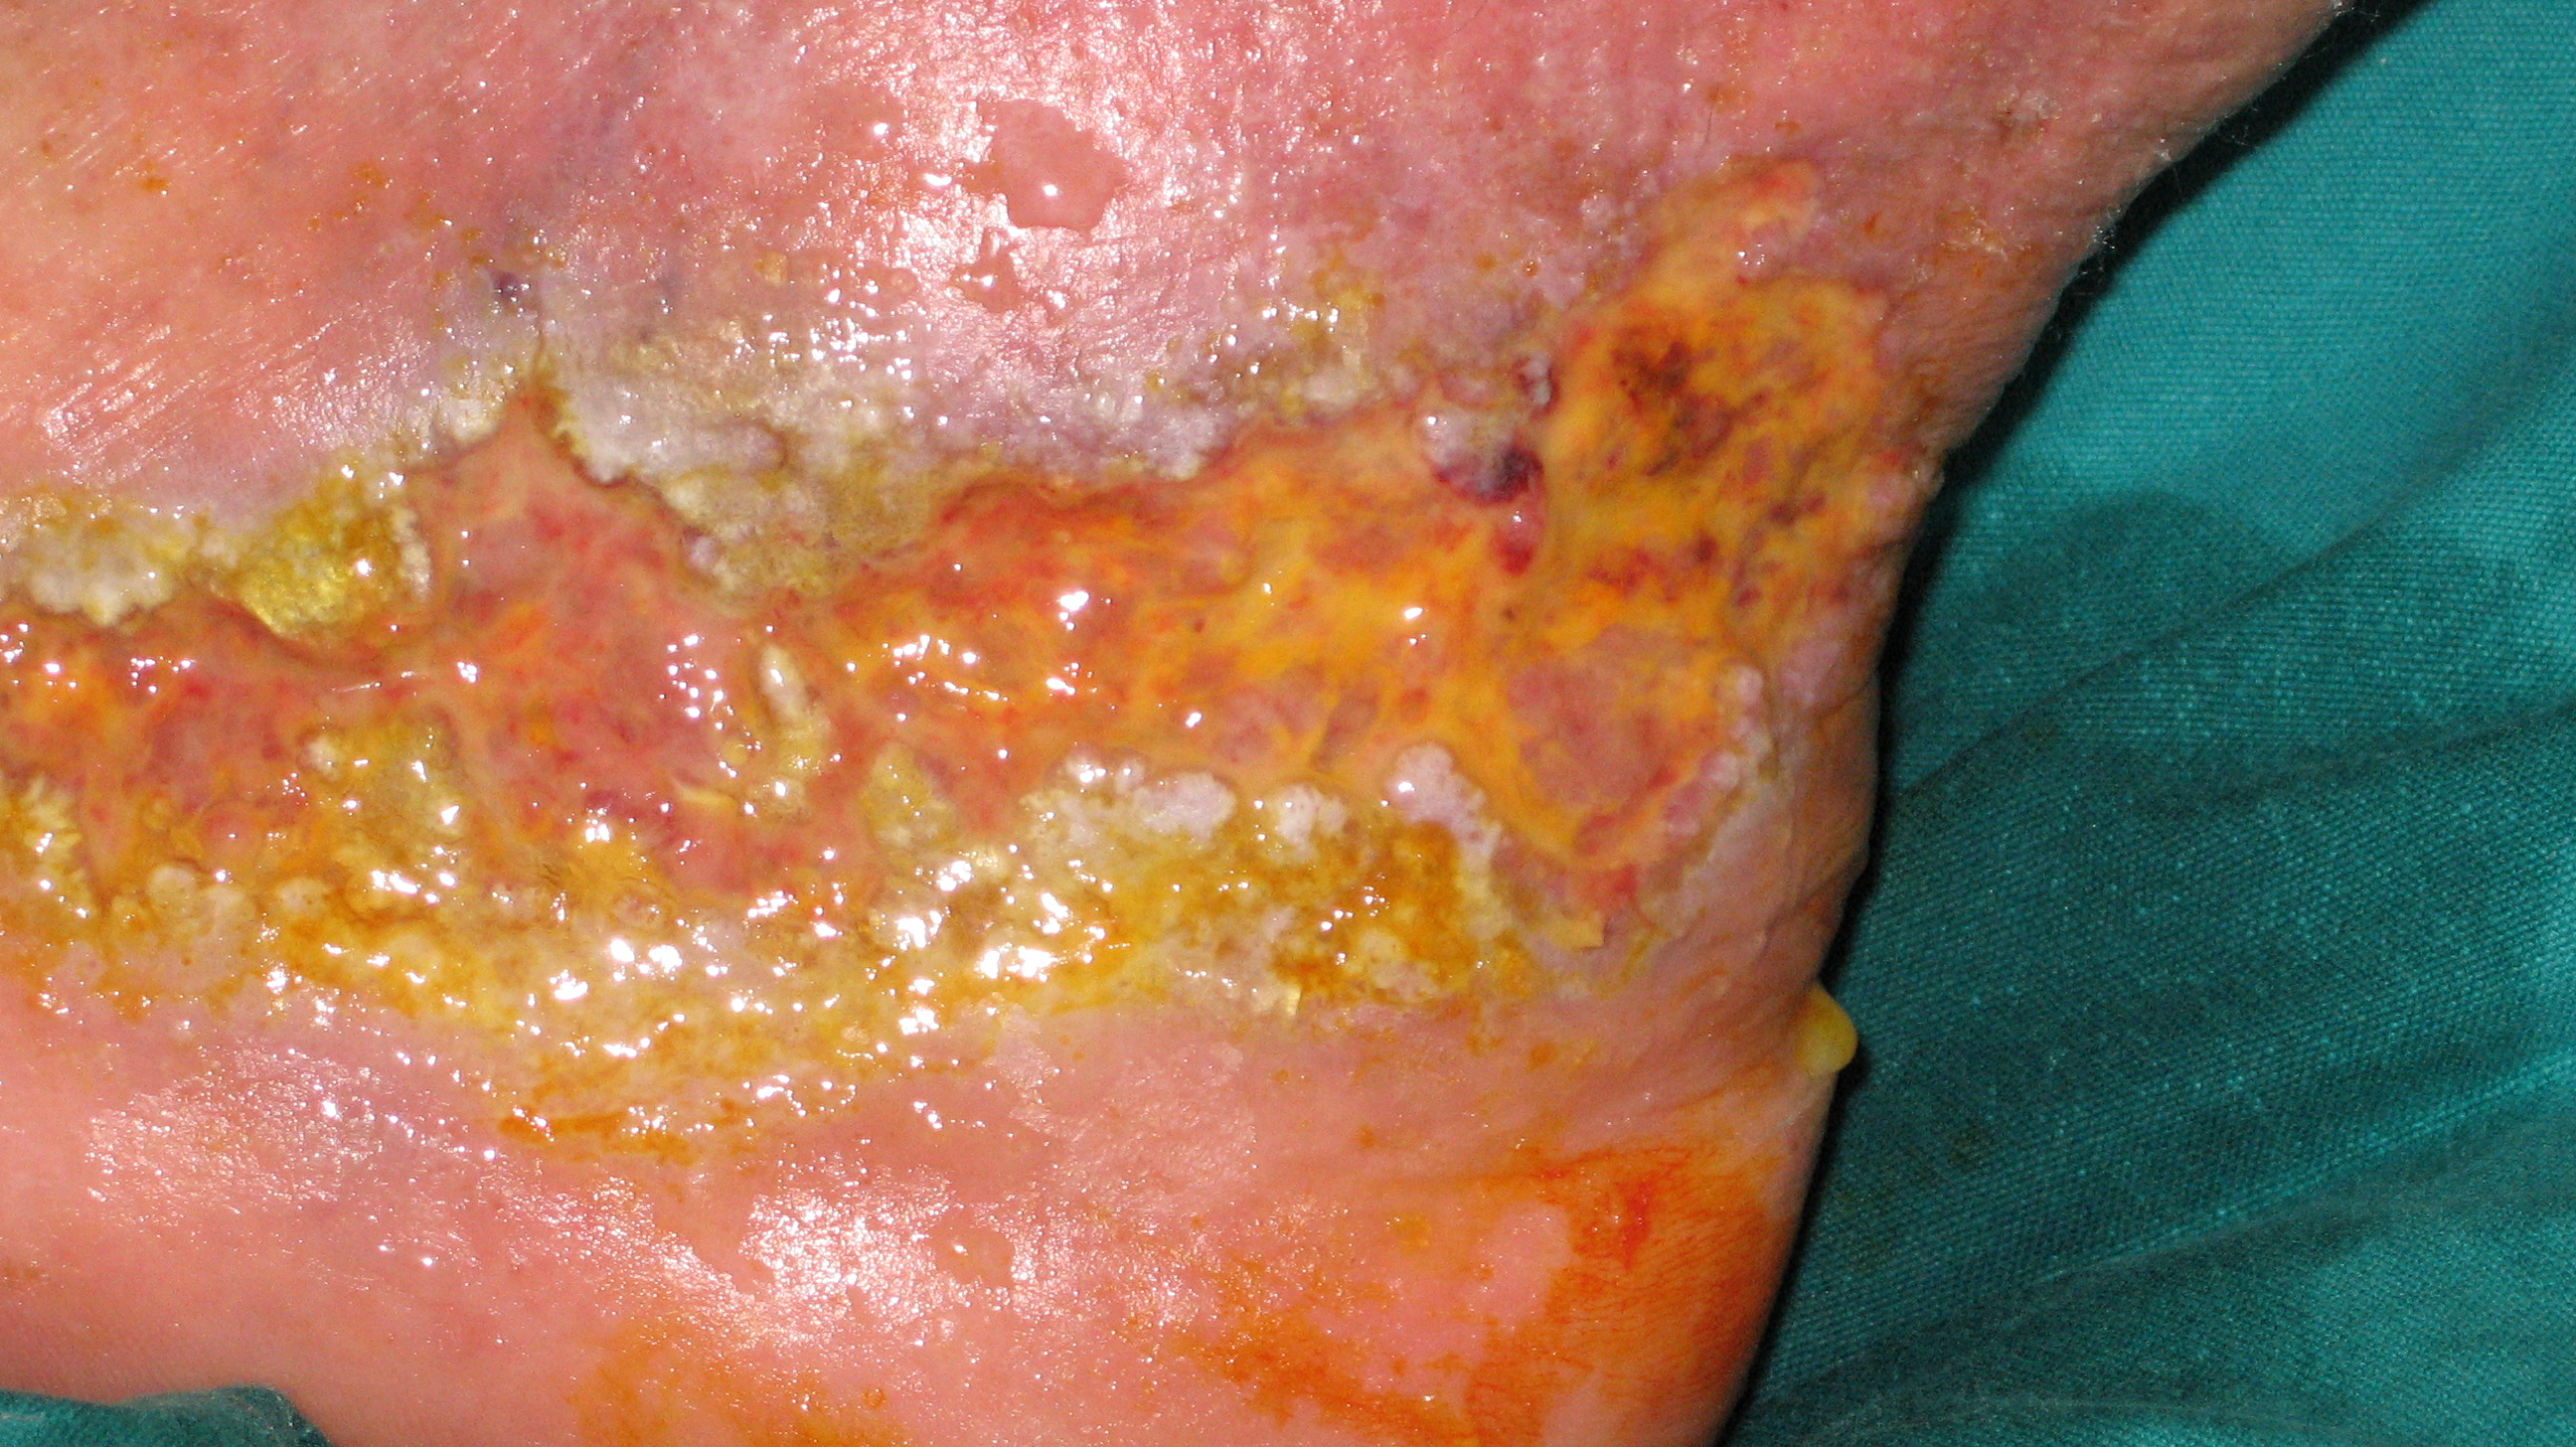 Tipica insorgenza di pioderma gangrenoso in paziente affetta da rettocolite ulcerosa.